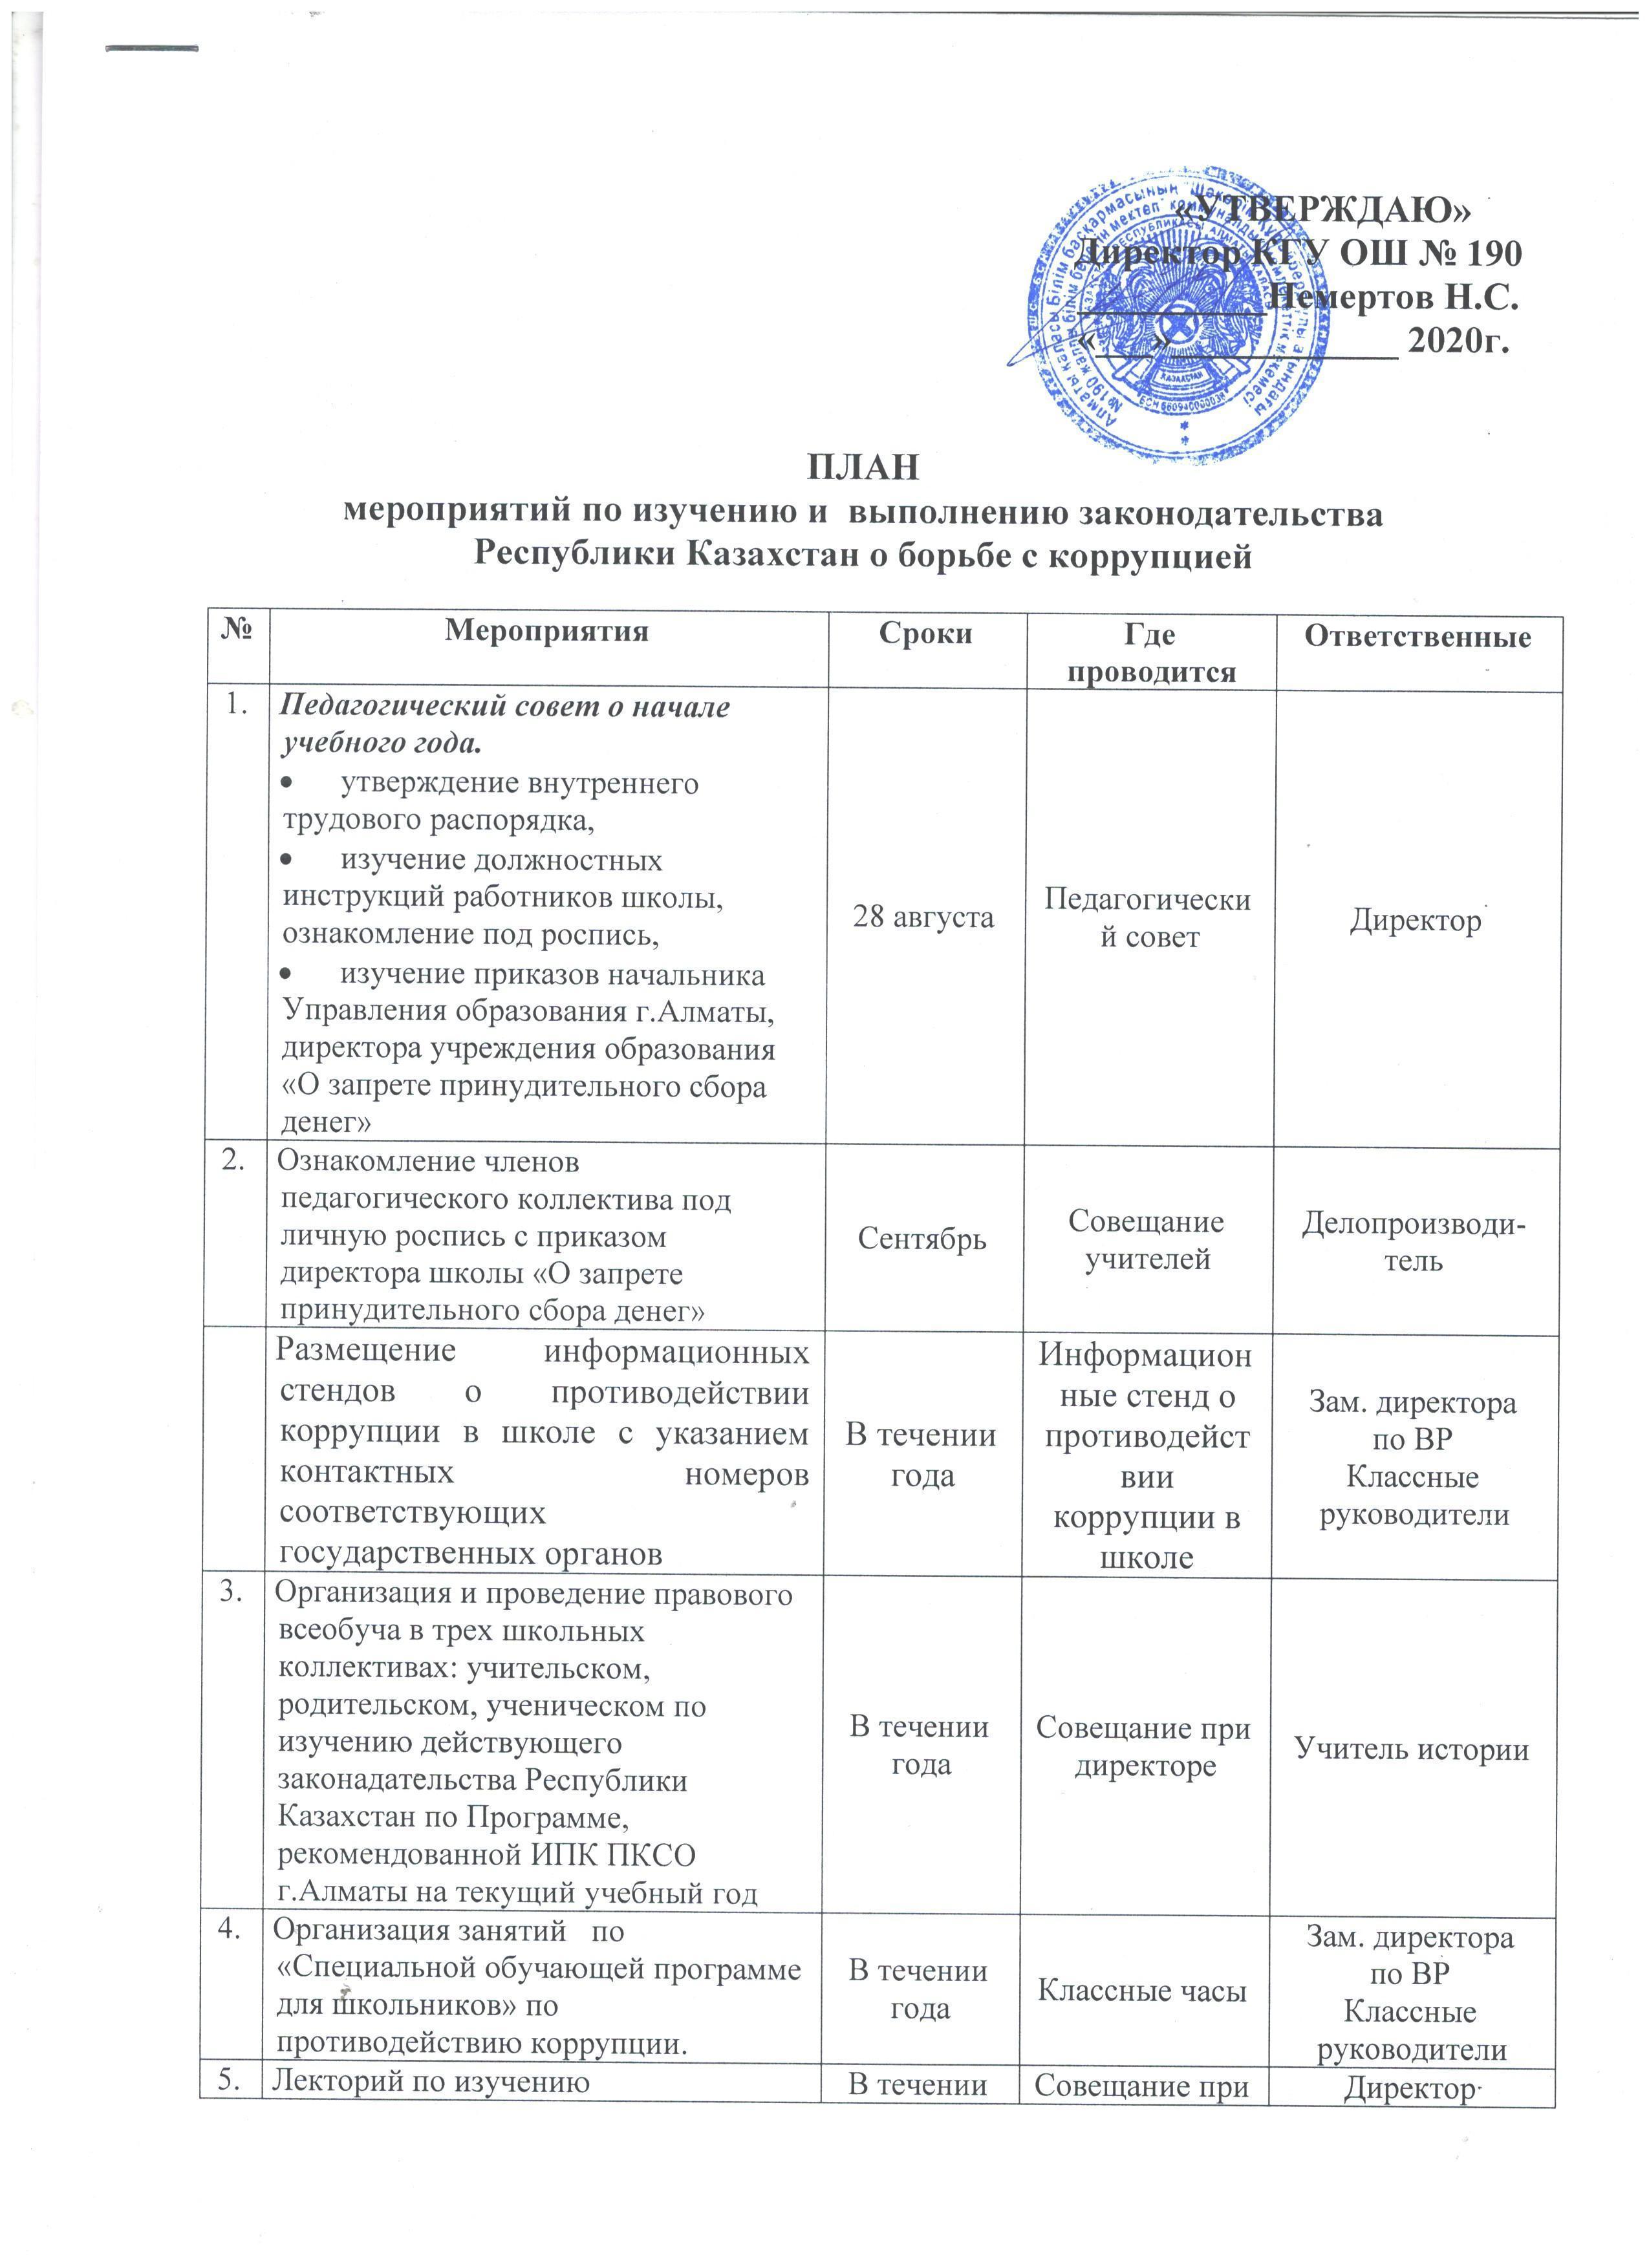 План мероприятий по изучению и выполнению законадательства Республики Казахстан о борьбе с коррупцией